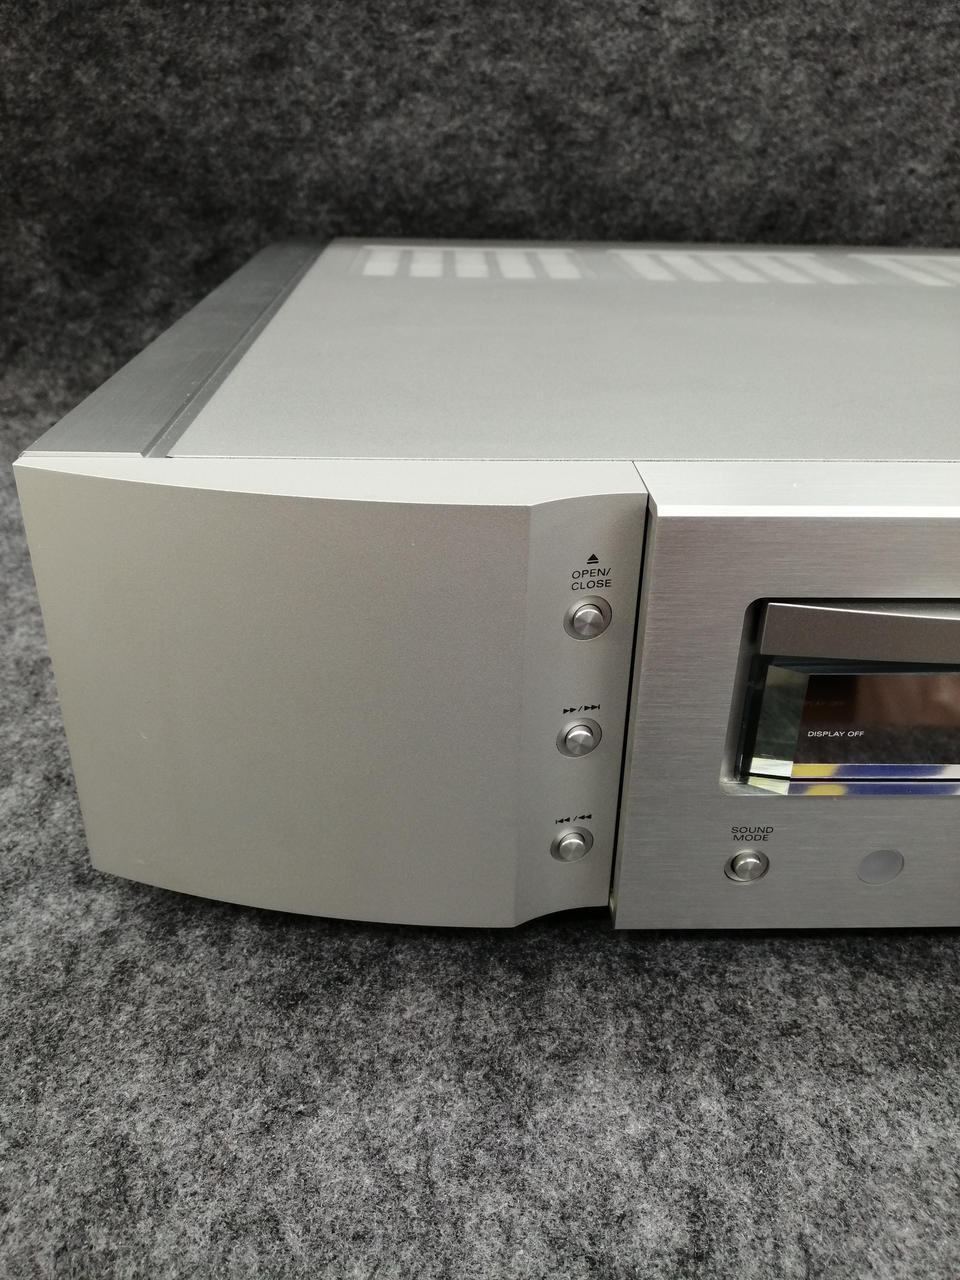 SA-11S1 SACD/CD marantz Player Japan Used